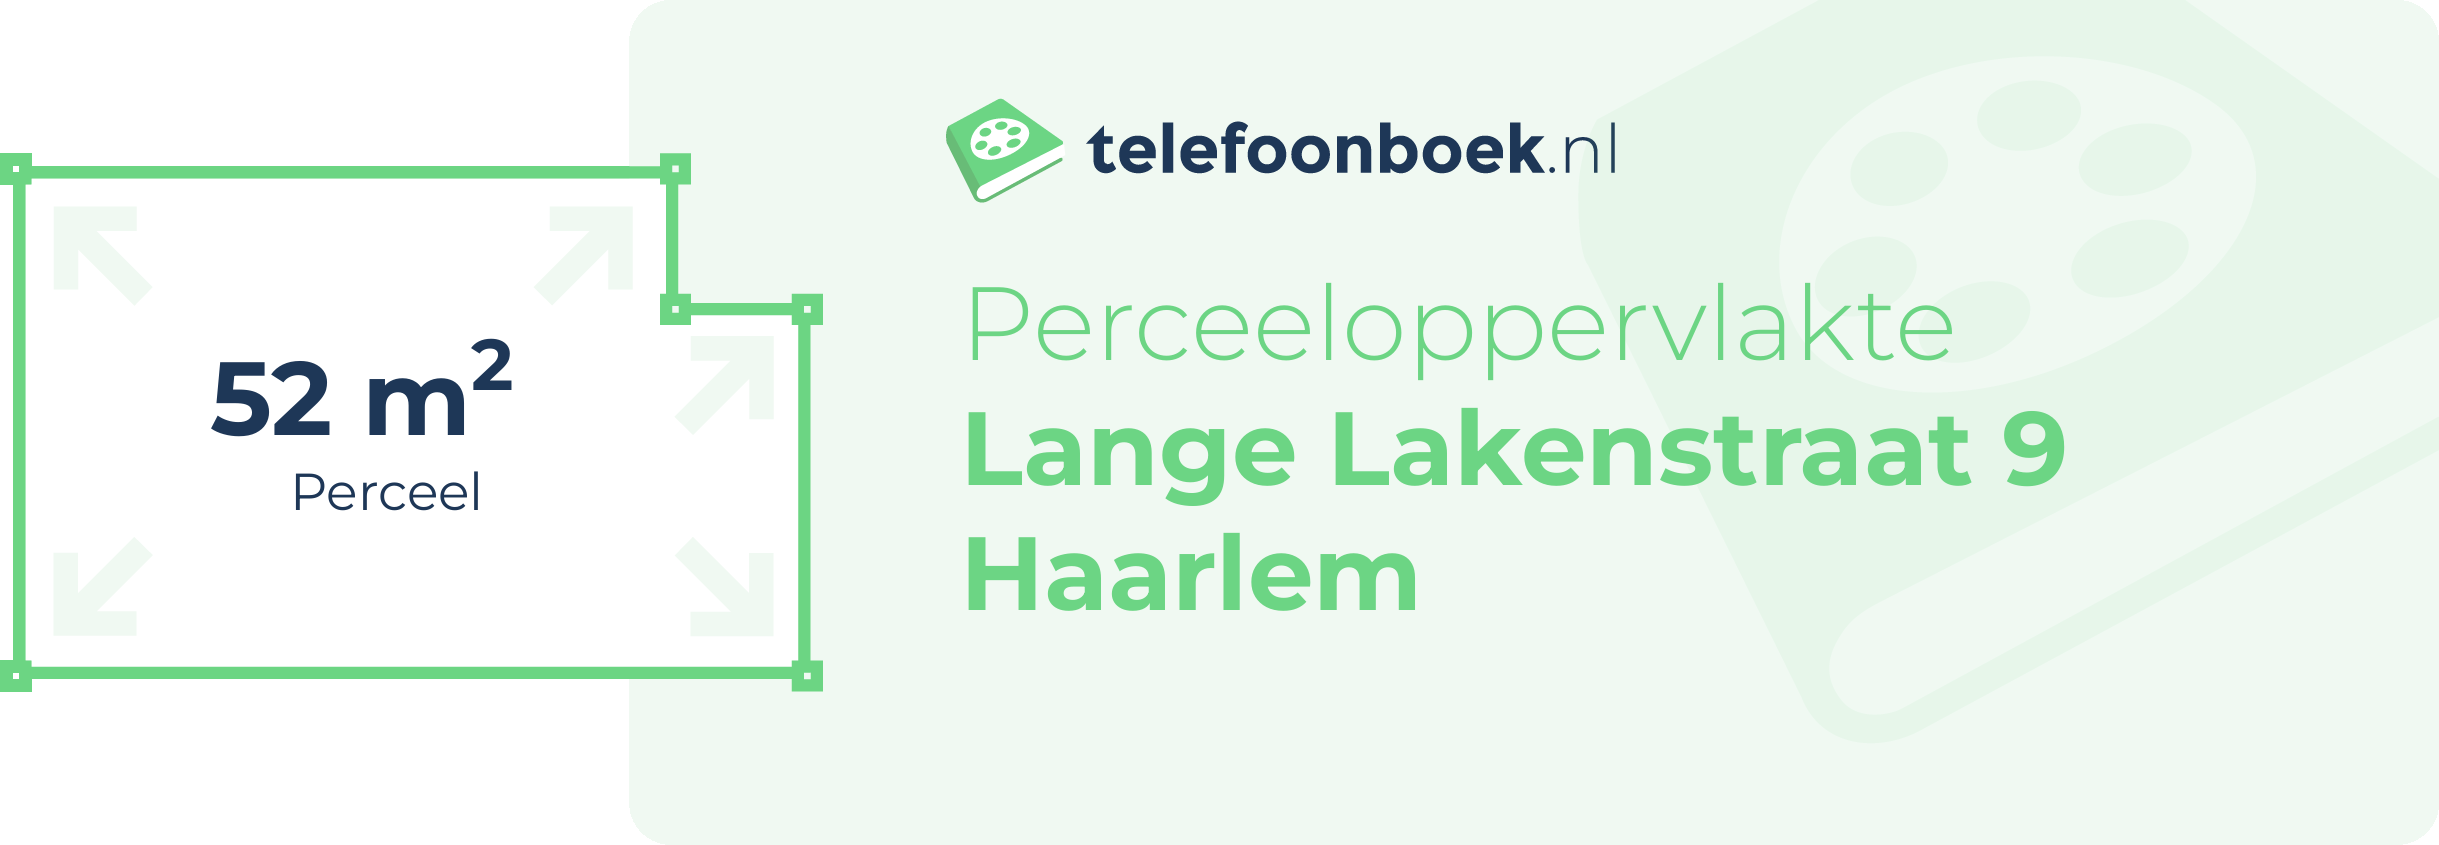 Perceeloppervlakte Lange Lakenstraat 9 Haarlem